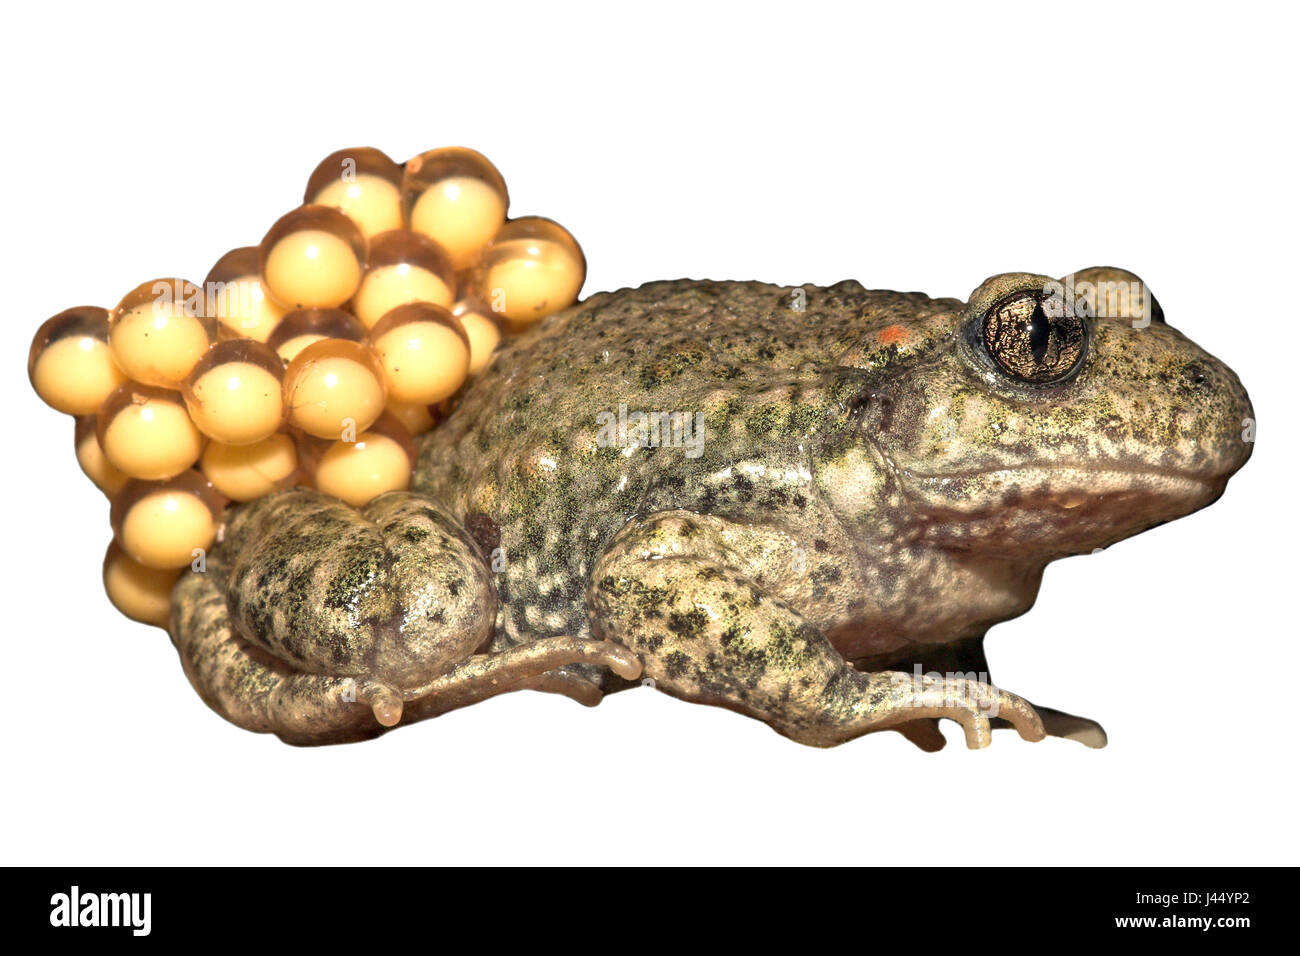 Ostetrica comune toad con uova contro uno sfondo bianco (resa) Foto Stock